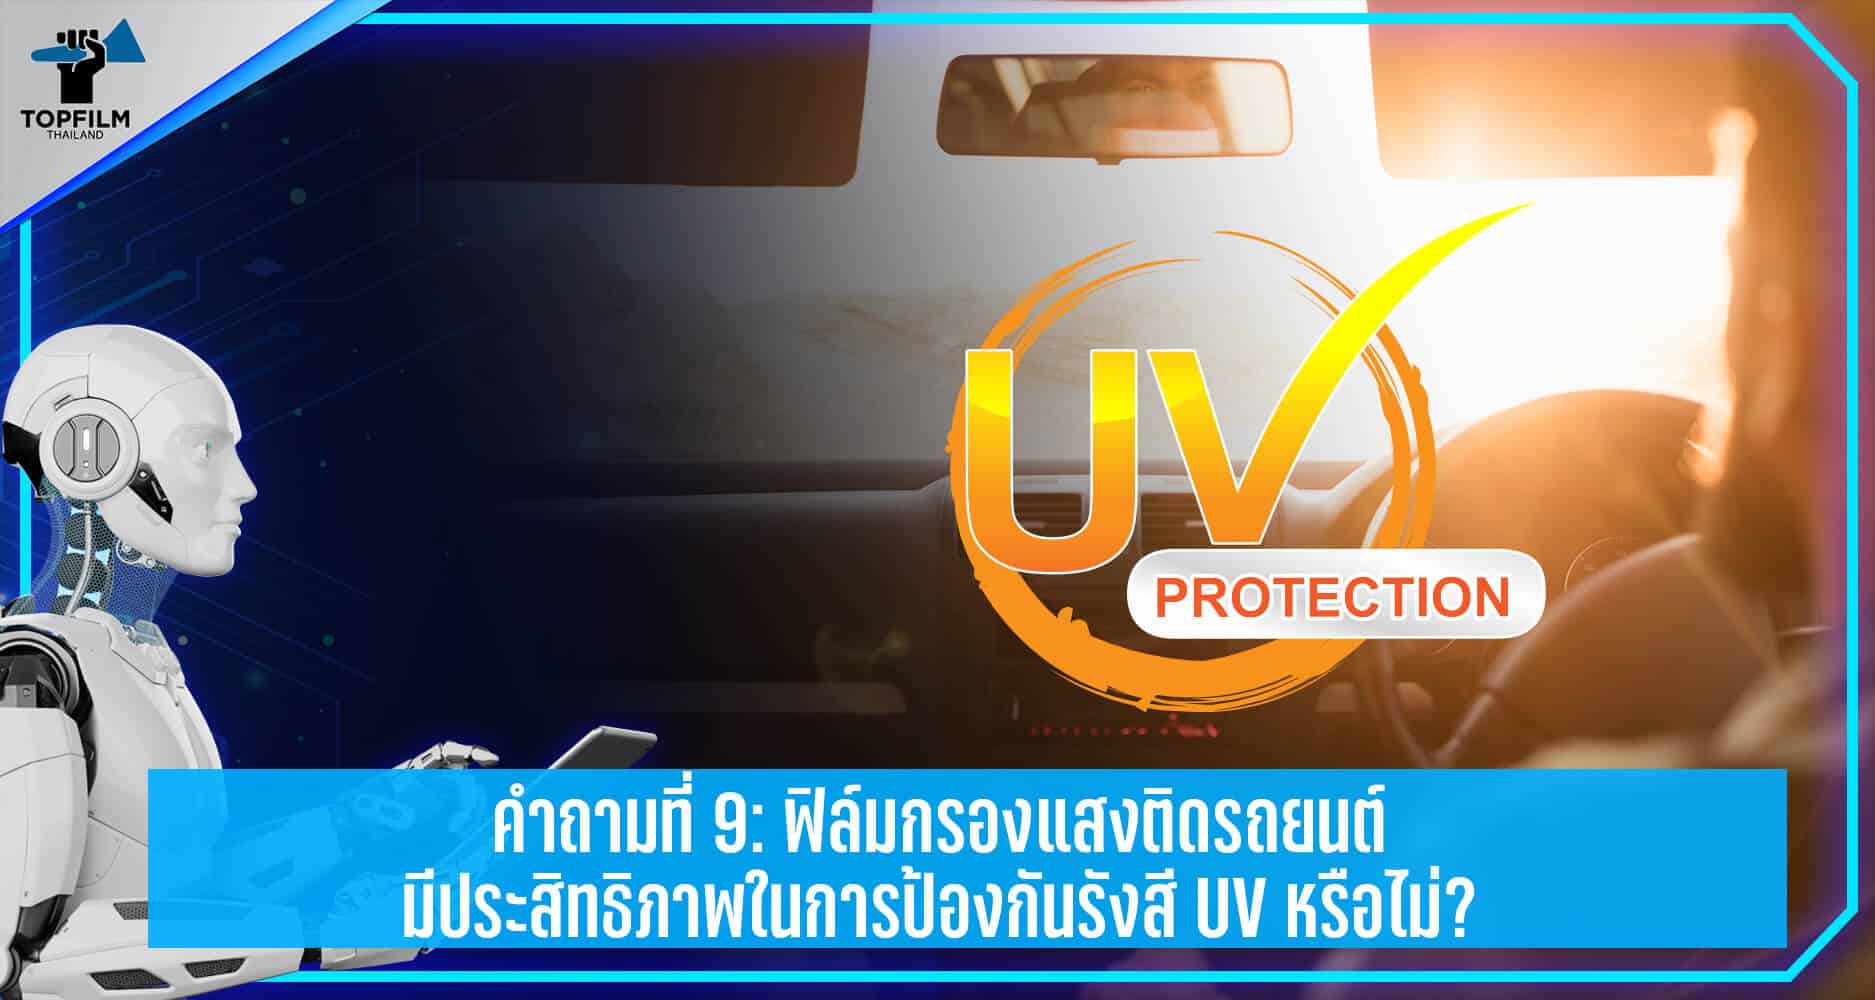 ฟิล์มกรองแสงติดรถยนต์ป้องกันรังสี UV หรือไม่